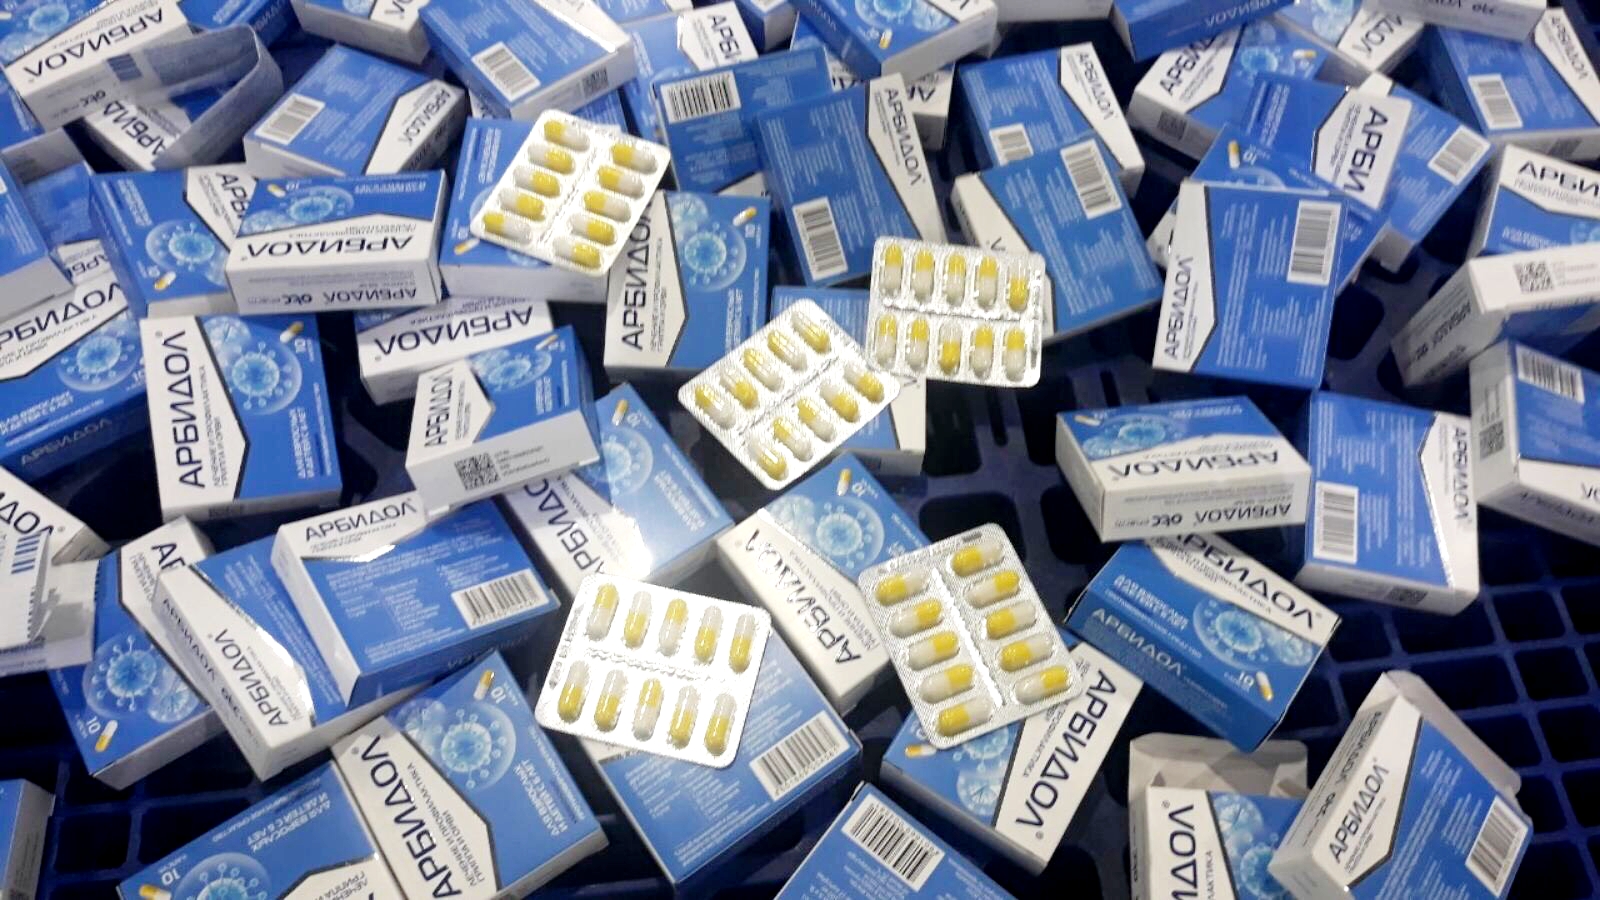 Thuốc Arbidol được quảng cáo điều trị Covid-19 nhập khẩu trái phép từ Nga về Việt Nam - Ảnh 2.